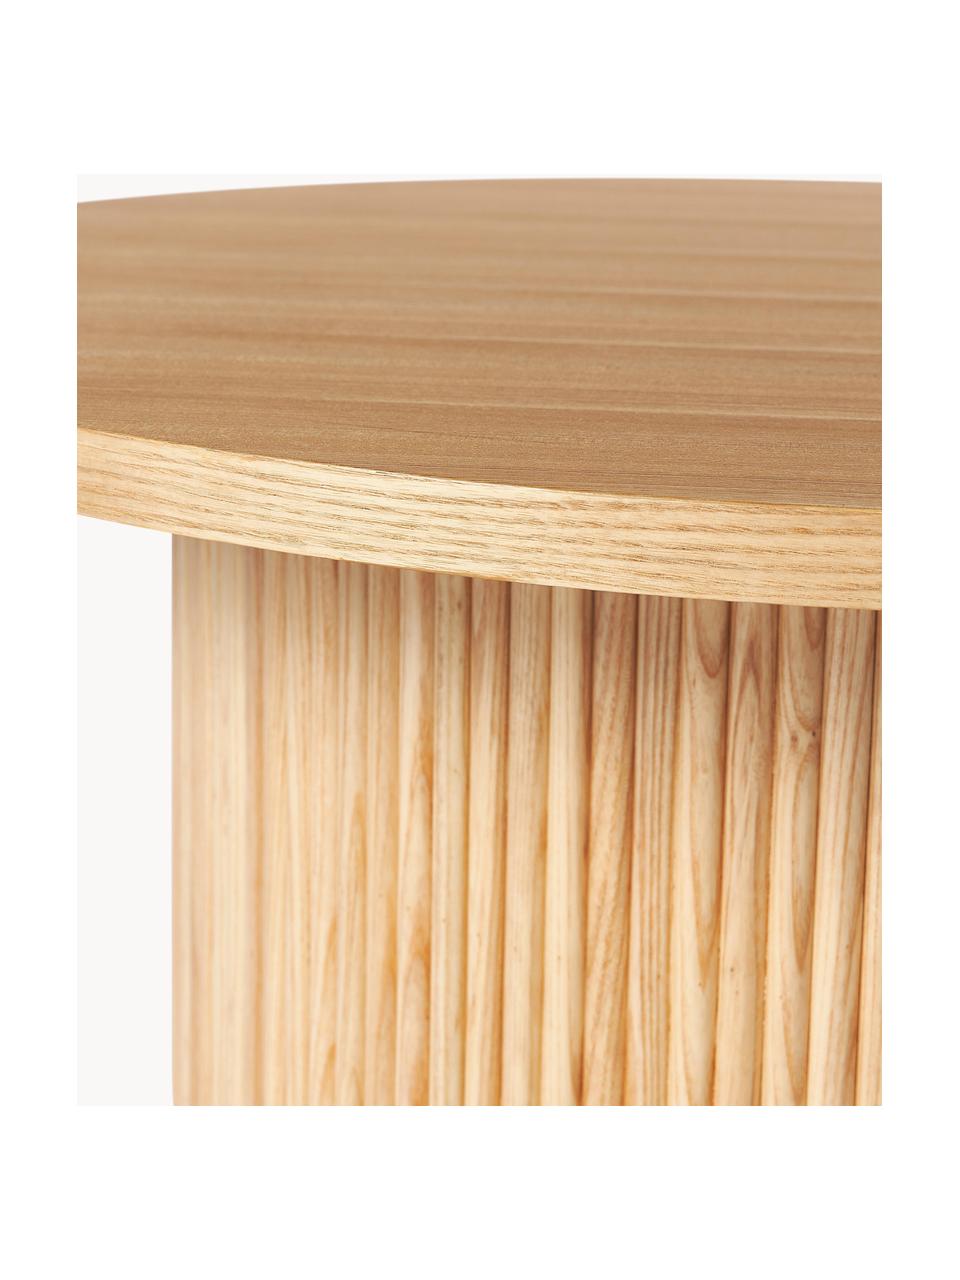 Tavolino rotondo da salotto in legno Nele, Pannello di fibra a media densità (MDF) con finitura in legno di frassino, Legno di frassino chiaro, Ø 85 cm